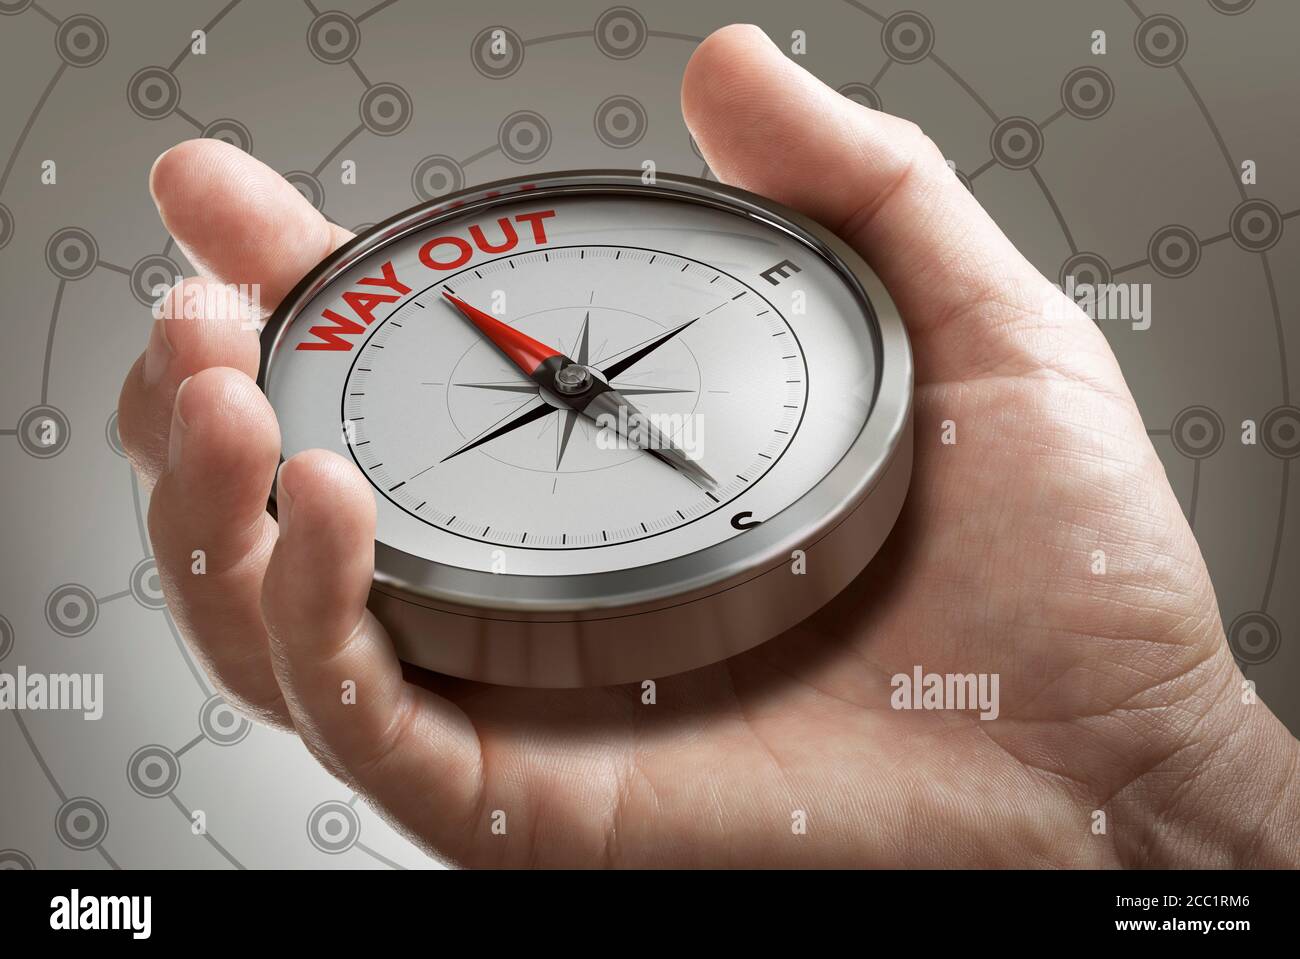 Man Hand zeigt Kompass mit Nadel zeigt den Text nach außen. Konzeptbild zur Veranschaulichung des Krisenausstiegsplans oder der Strategie. Zusammengesetztes Bild zwischen einem ha Stockfoto